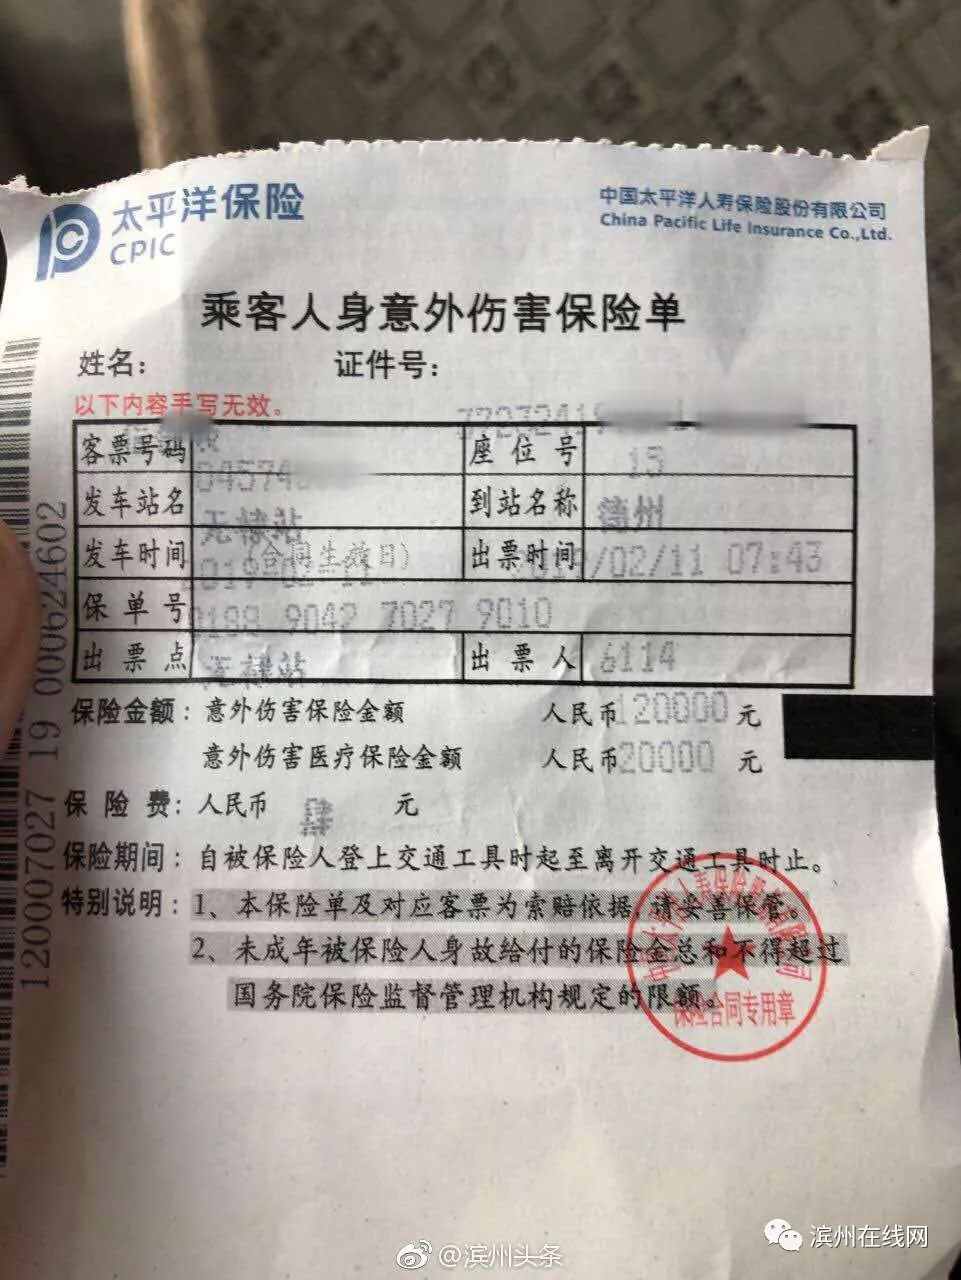 「曝光」滨州汽车站被曝强制乘客购买意外保险!在违法的边缘疯狂试探!